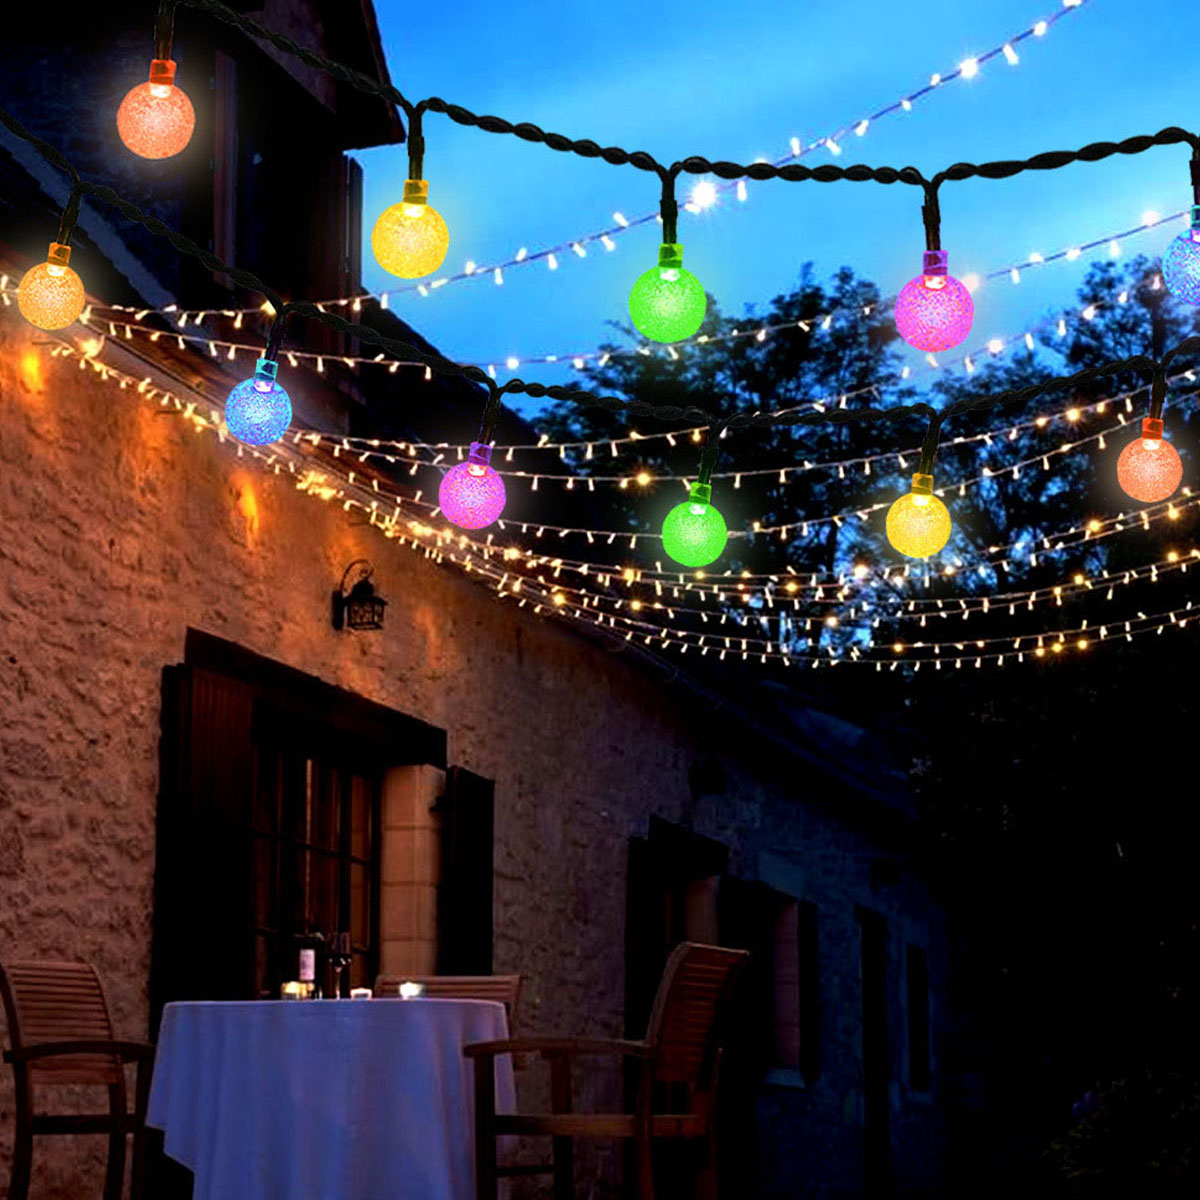 Geeignet Garten, Bubble Ball 7m Party Seifenblasen-Kristallkugel, für Ballon-Glühbirne, Solar-Lichterketten, 50L, farbig DEDOM Licht,